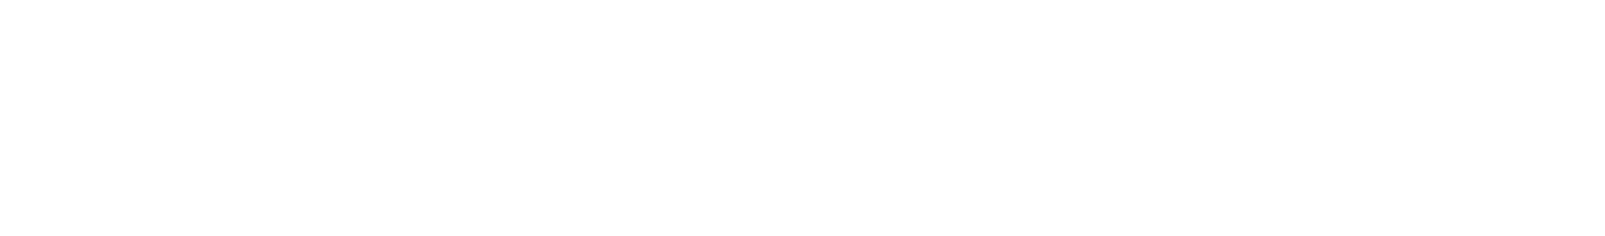 Endeavor Group logo large for dark backgrounds (transparent PNG)